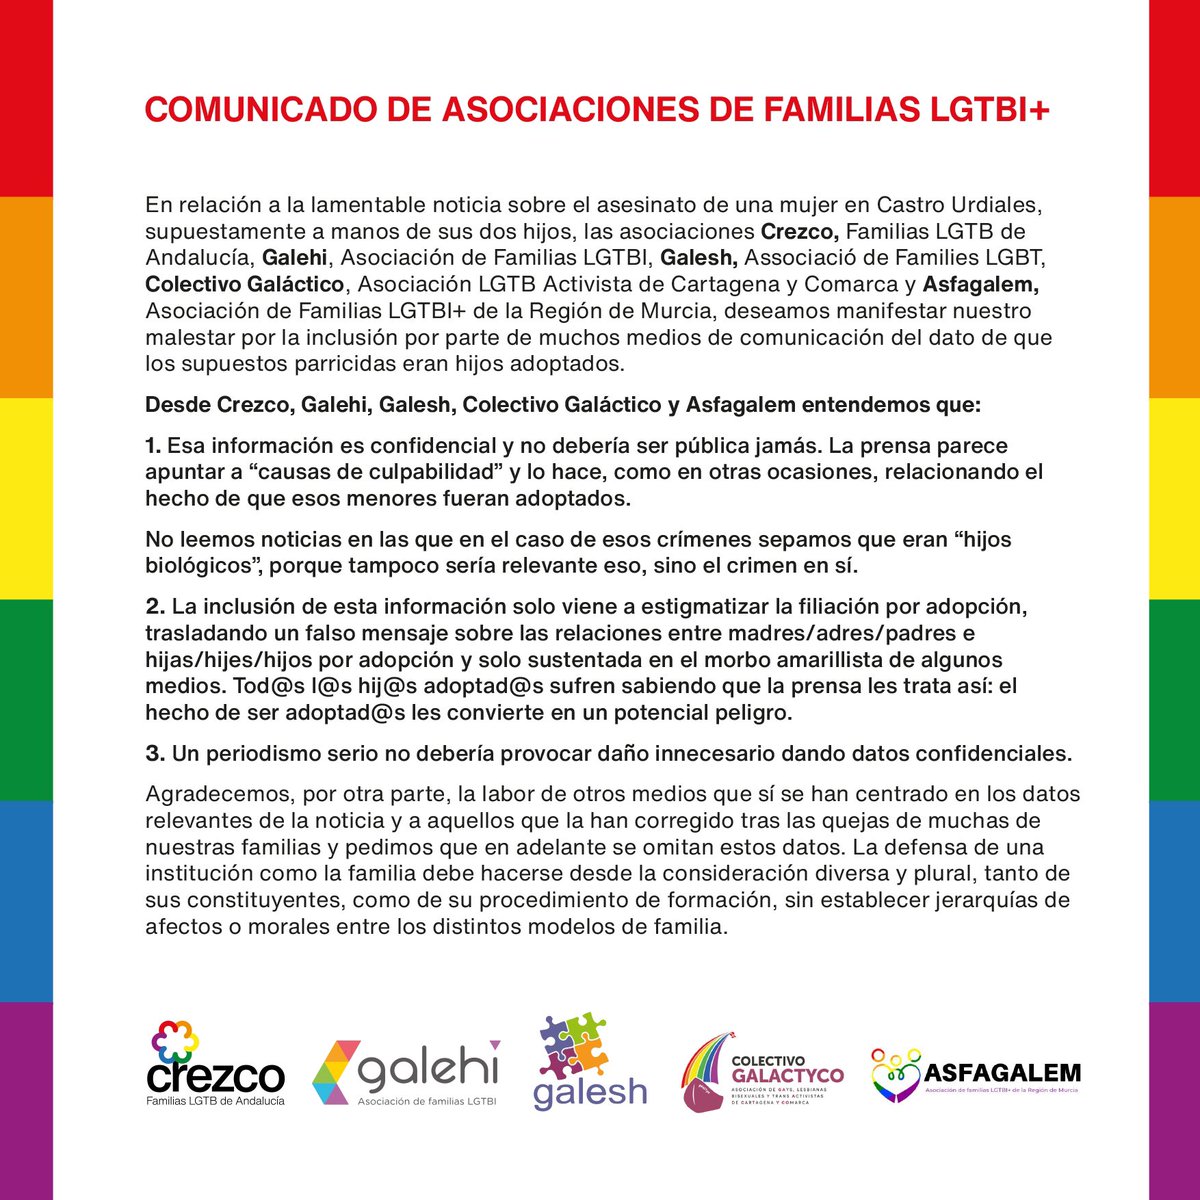 🔴🏳️‍🌈 COMUNICADO DE LAS ASOCIACIONES DE FAMILIAS LGTBI+ A LOS MEDIOS DE COMUNICACIÓN: